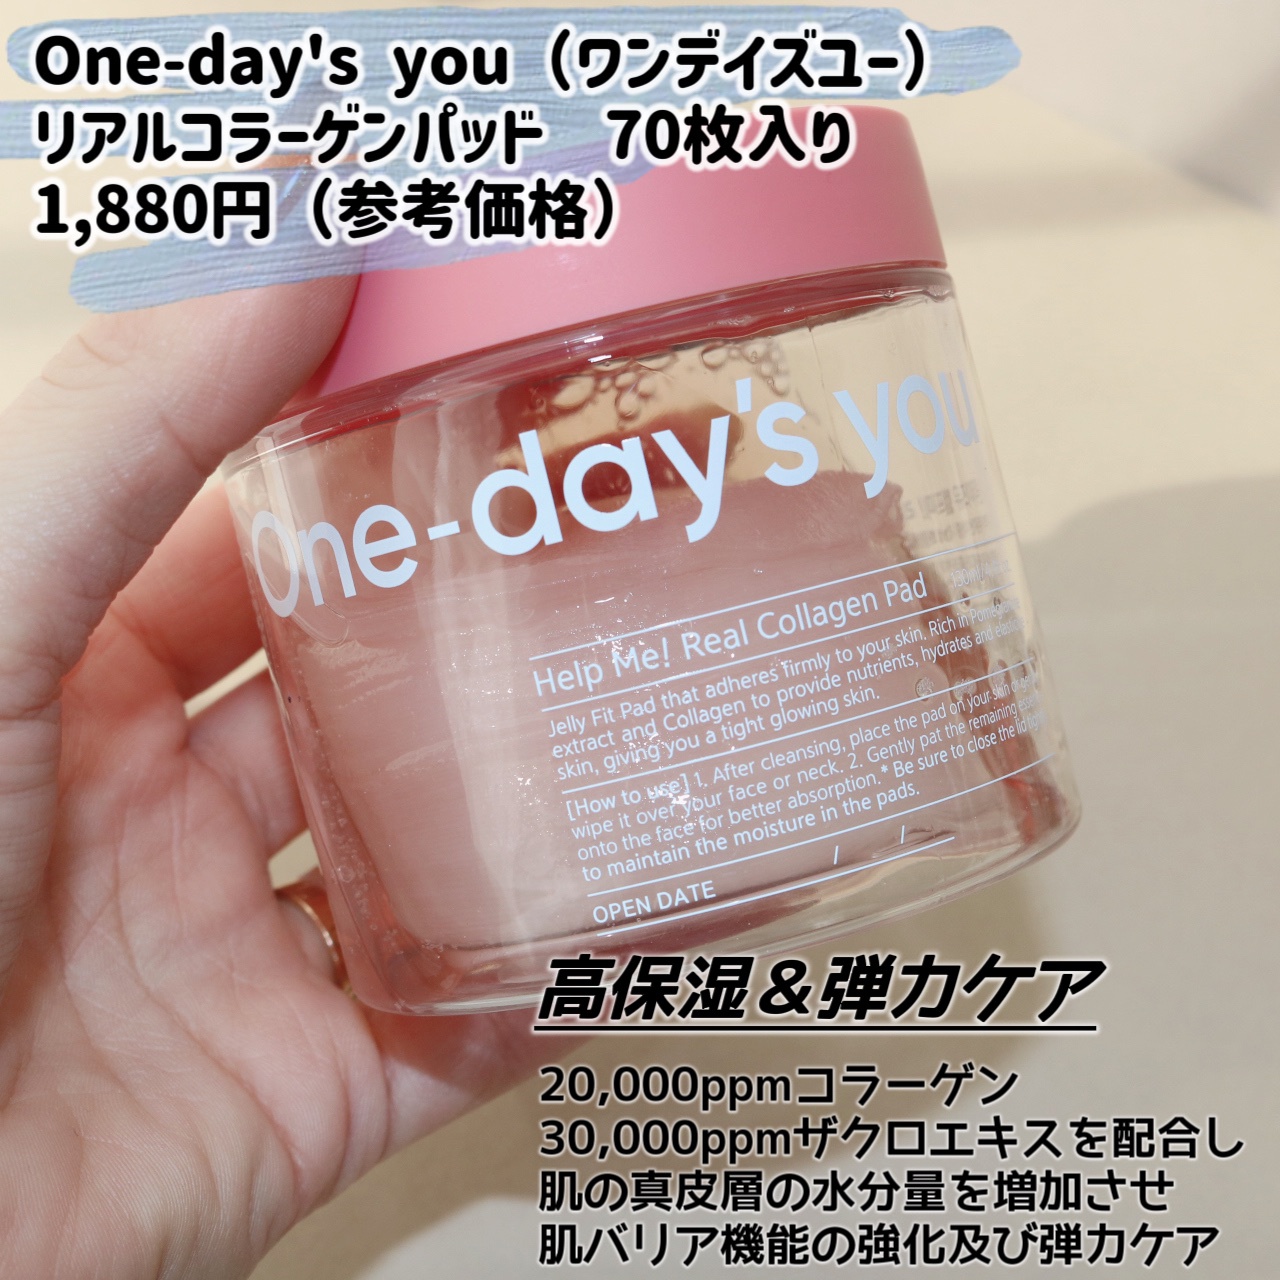 One-day's you(ワンデイズユー) / ヘルプミー! リアルコラーゲンパッド